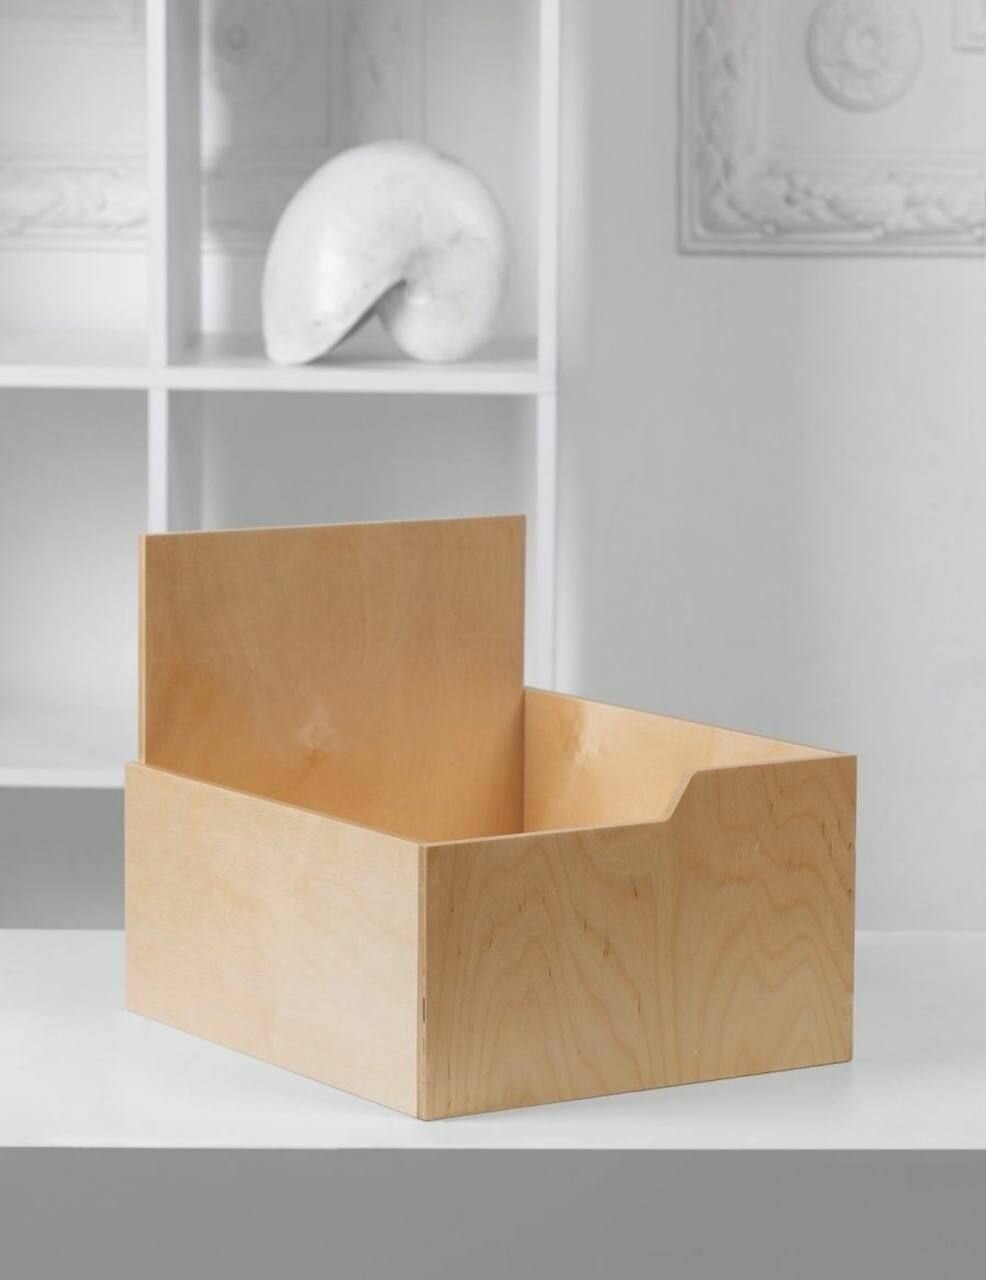 Органайзер коробка ящик лакированный деревянный для хранения вещей, одежды, обуви, косметики, постельного белья в шкаф